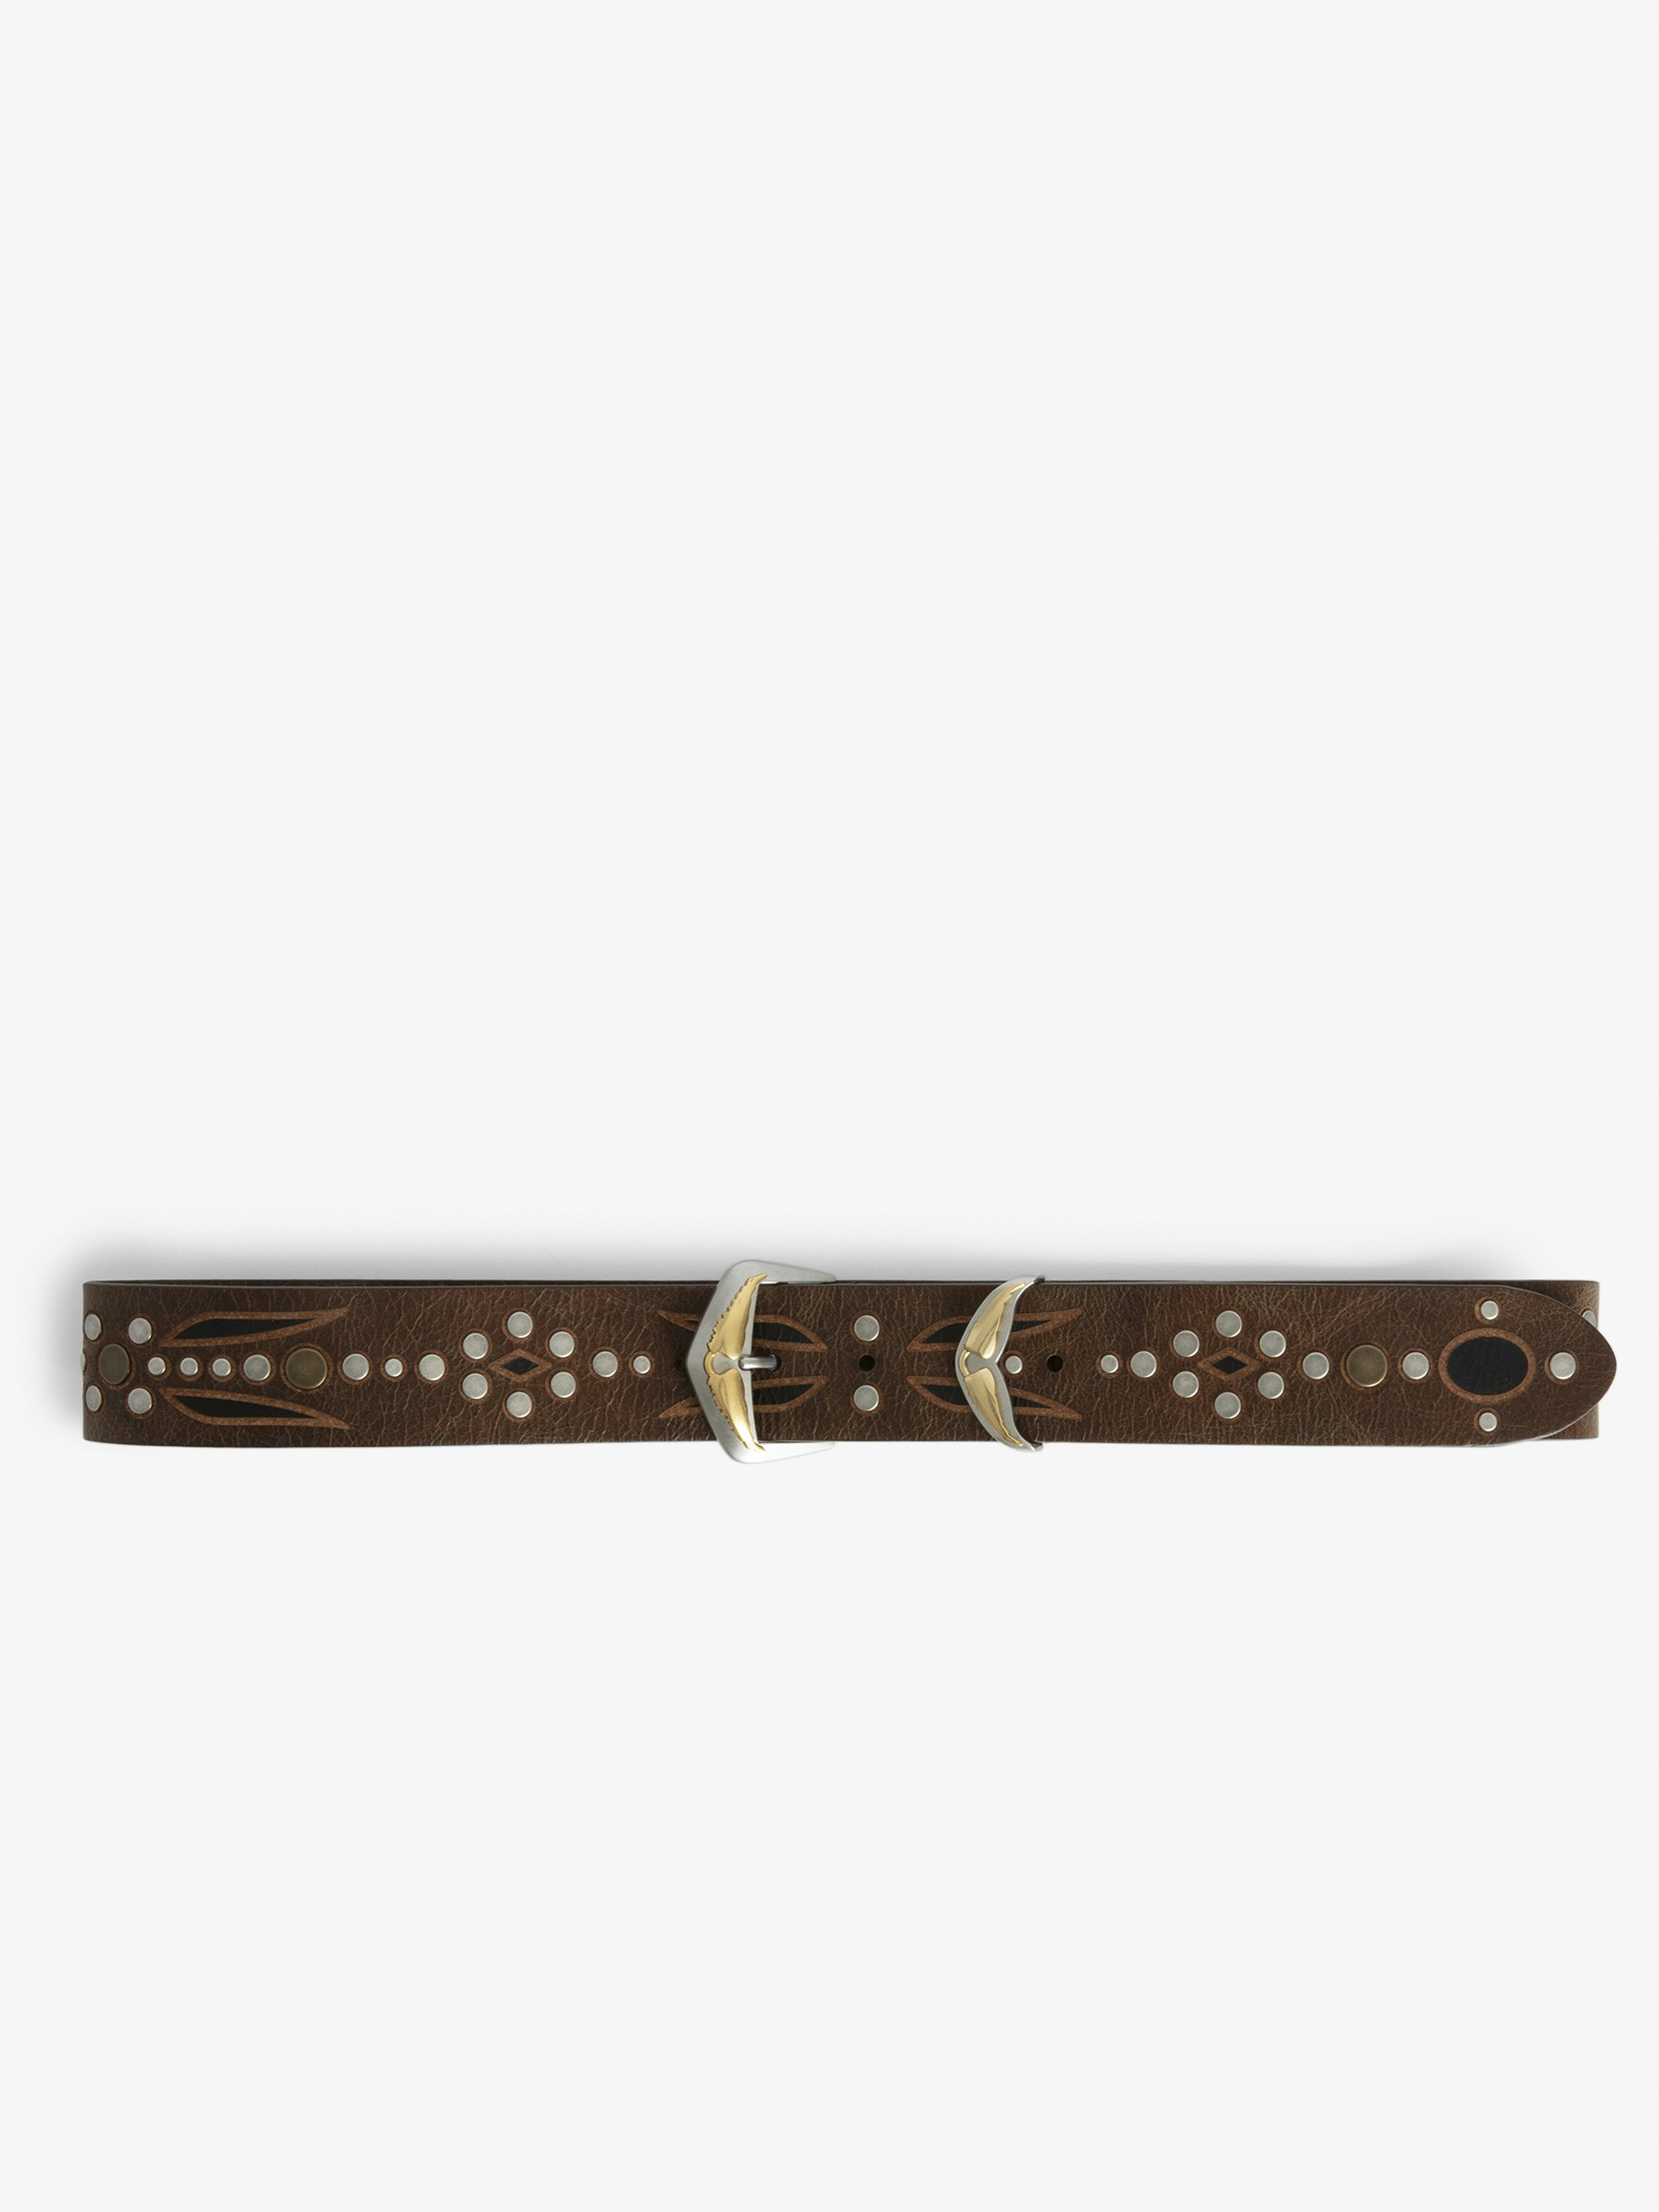 Cintura Jane - Cintura in pelle marrone vintage decorata con motivi incisi, borchie e fibbia con ali distintive.